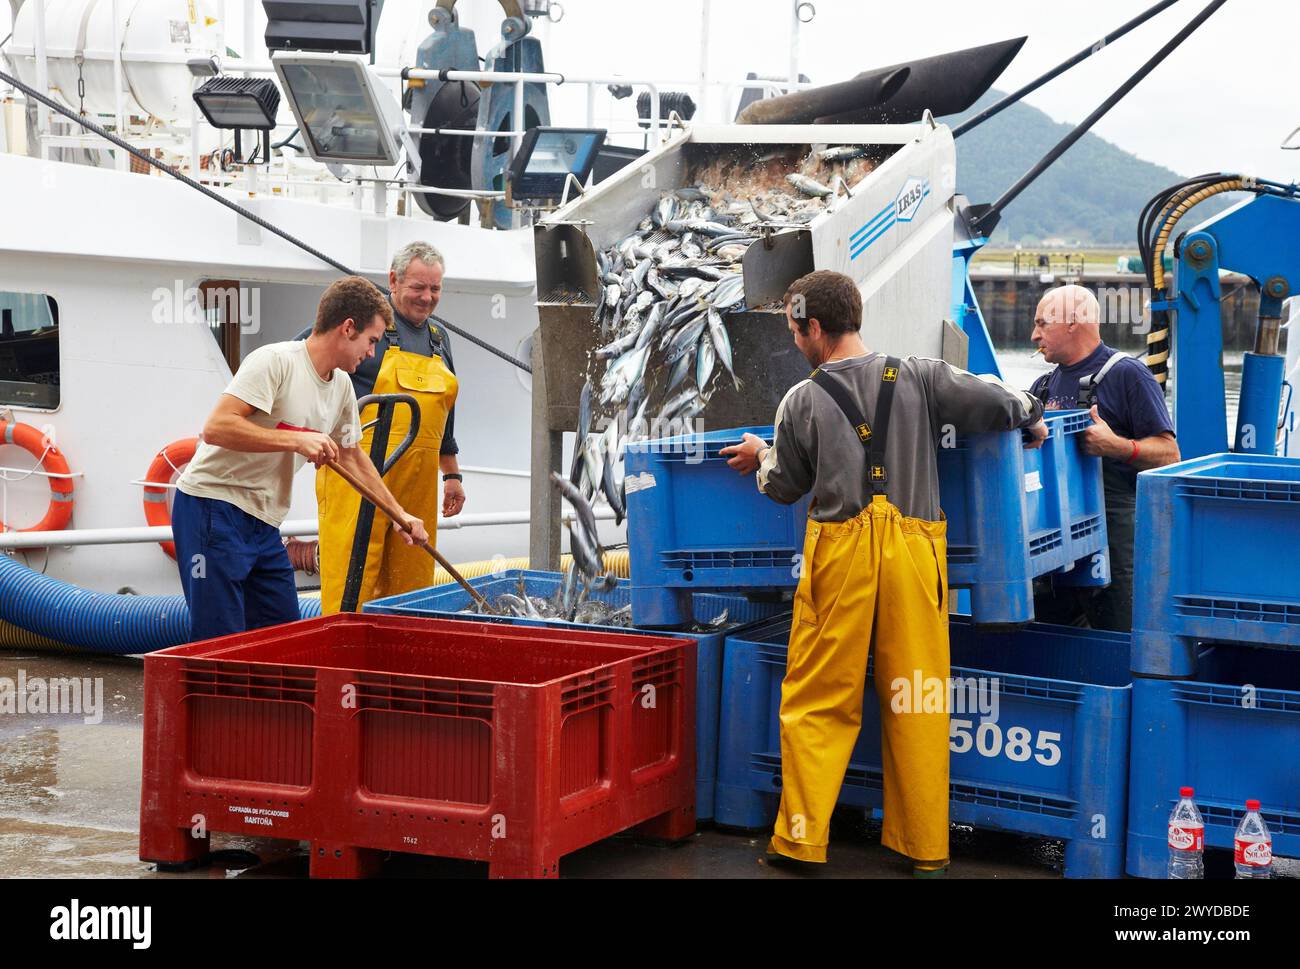 Maquereaux, déchargement du poisson du bateau au port avec une pompe aspirante, Santoña, Cantabrie, Espagne. Banque D'Images